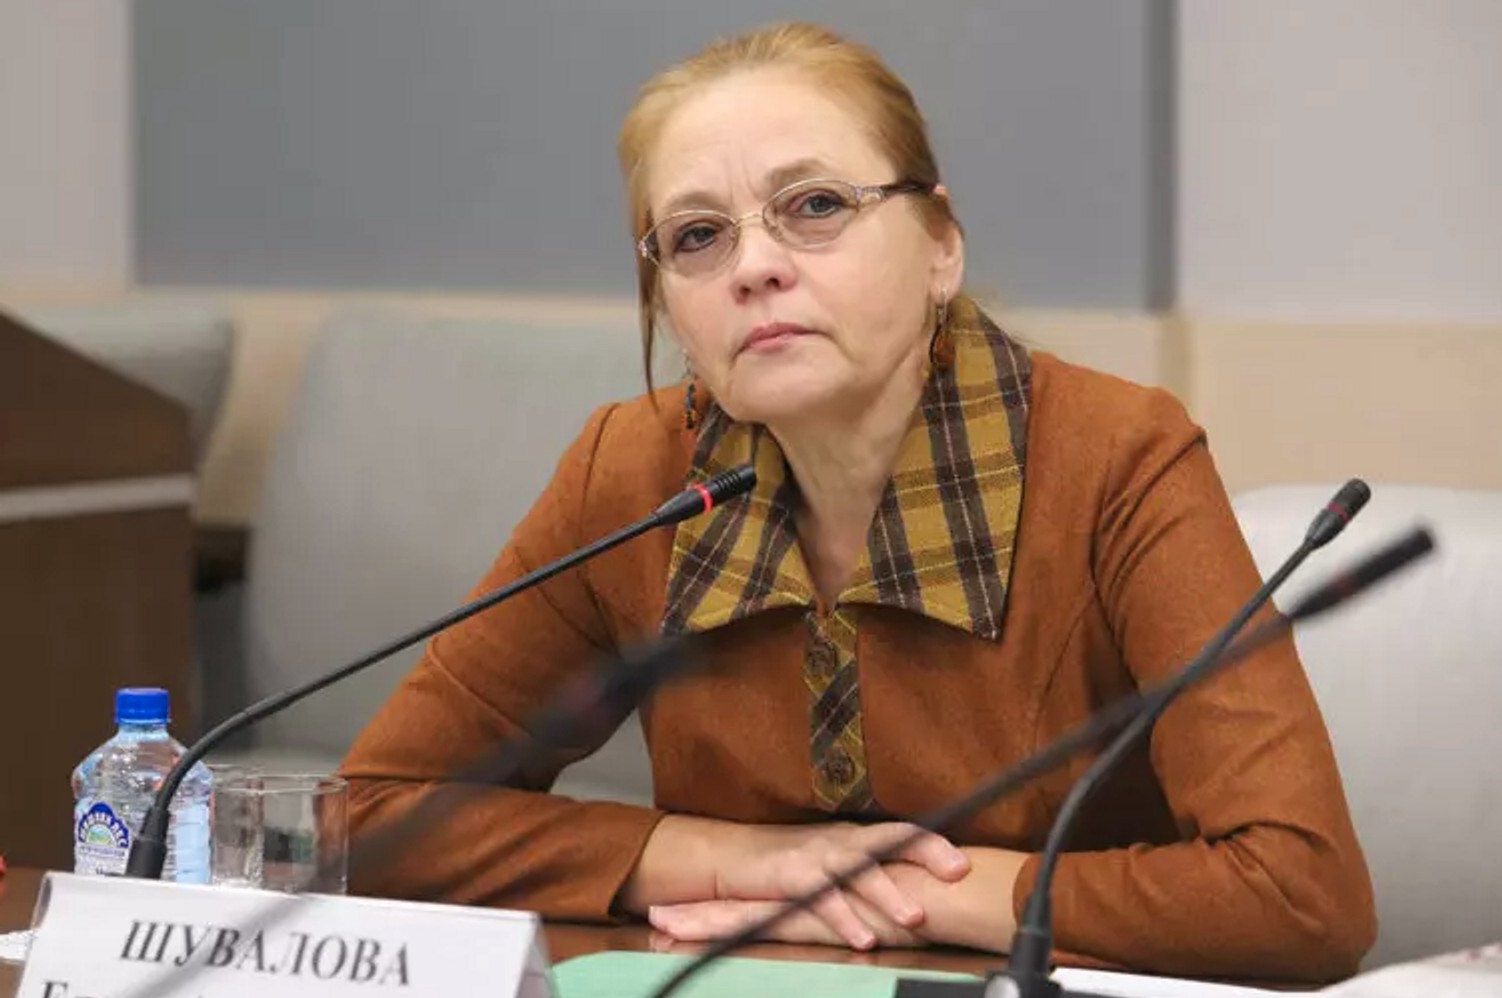 Олену Шувалову і Дмитра Локтєва виключили з фракції КПРФ в Мосміськдумі «за систематичну дискредитацію» партії